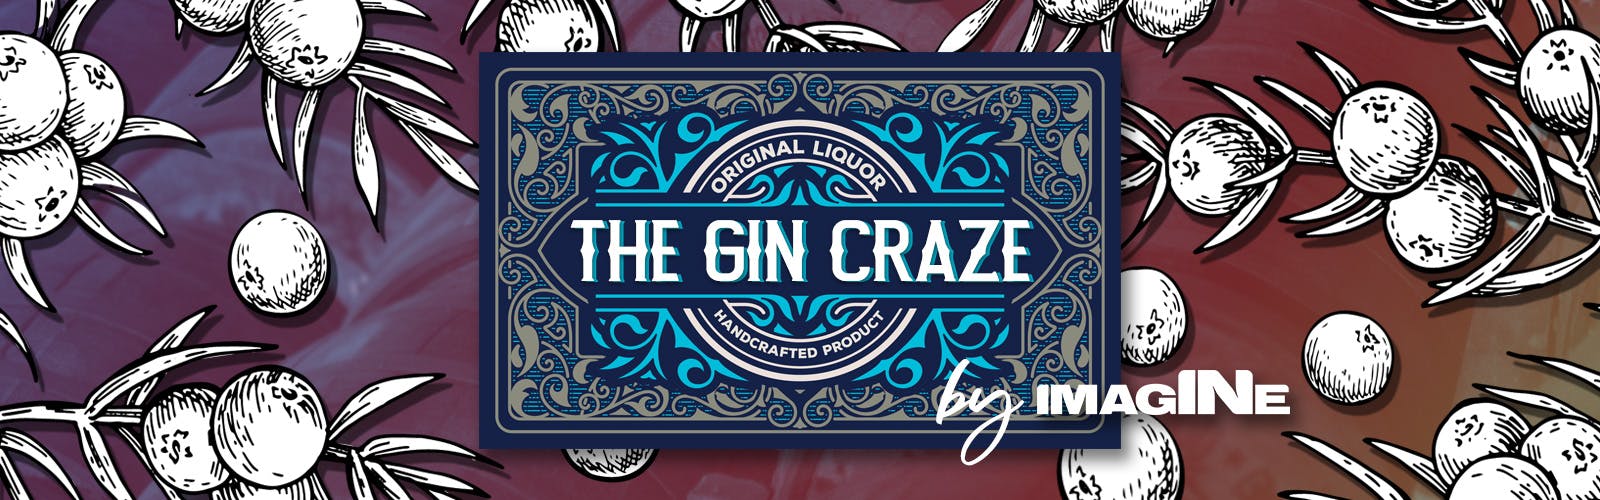 De Gin Craze-ervaring in Londen met Gin Palace en distilleerderijtour